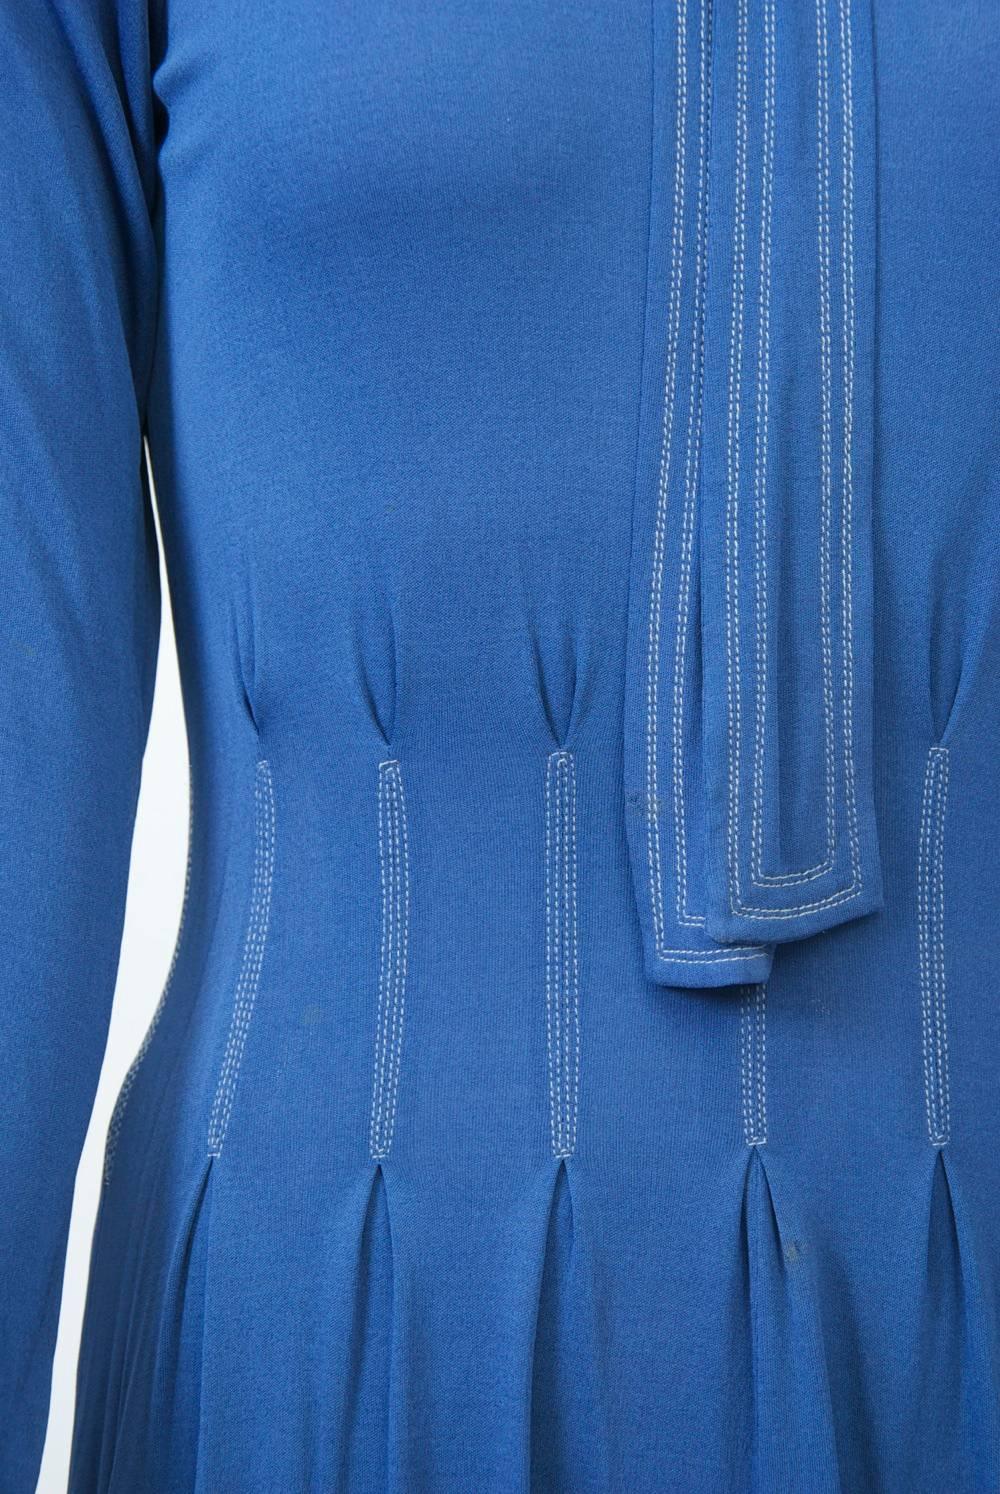 Women's or Men's Jean Muir Blue Dress